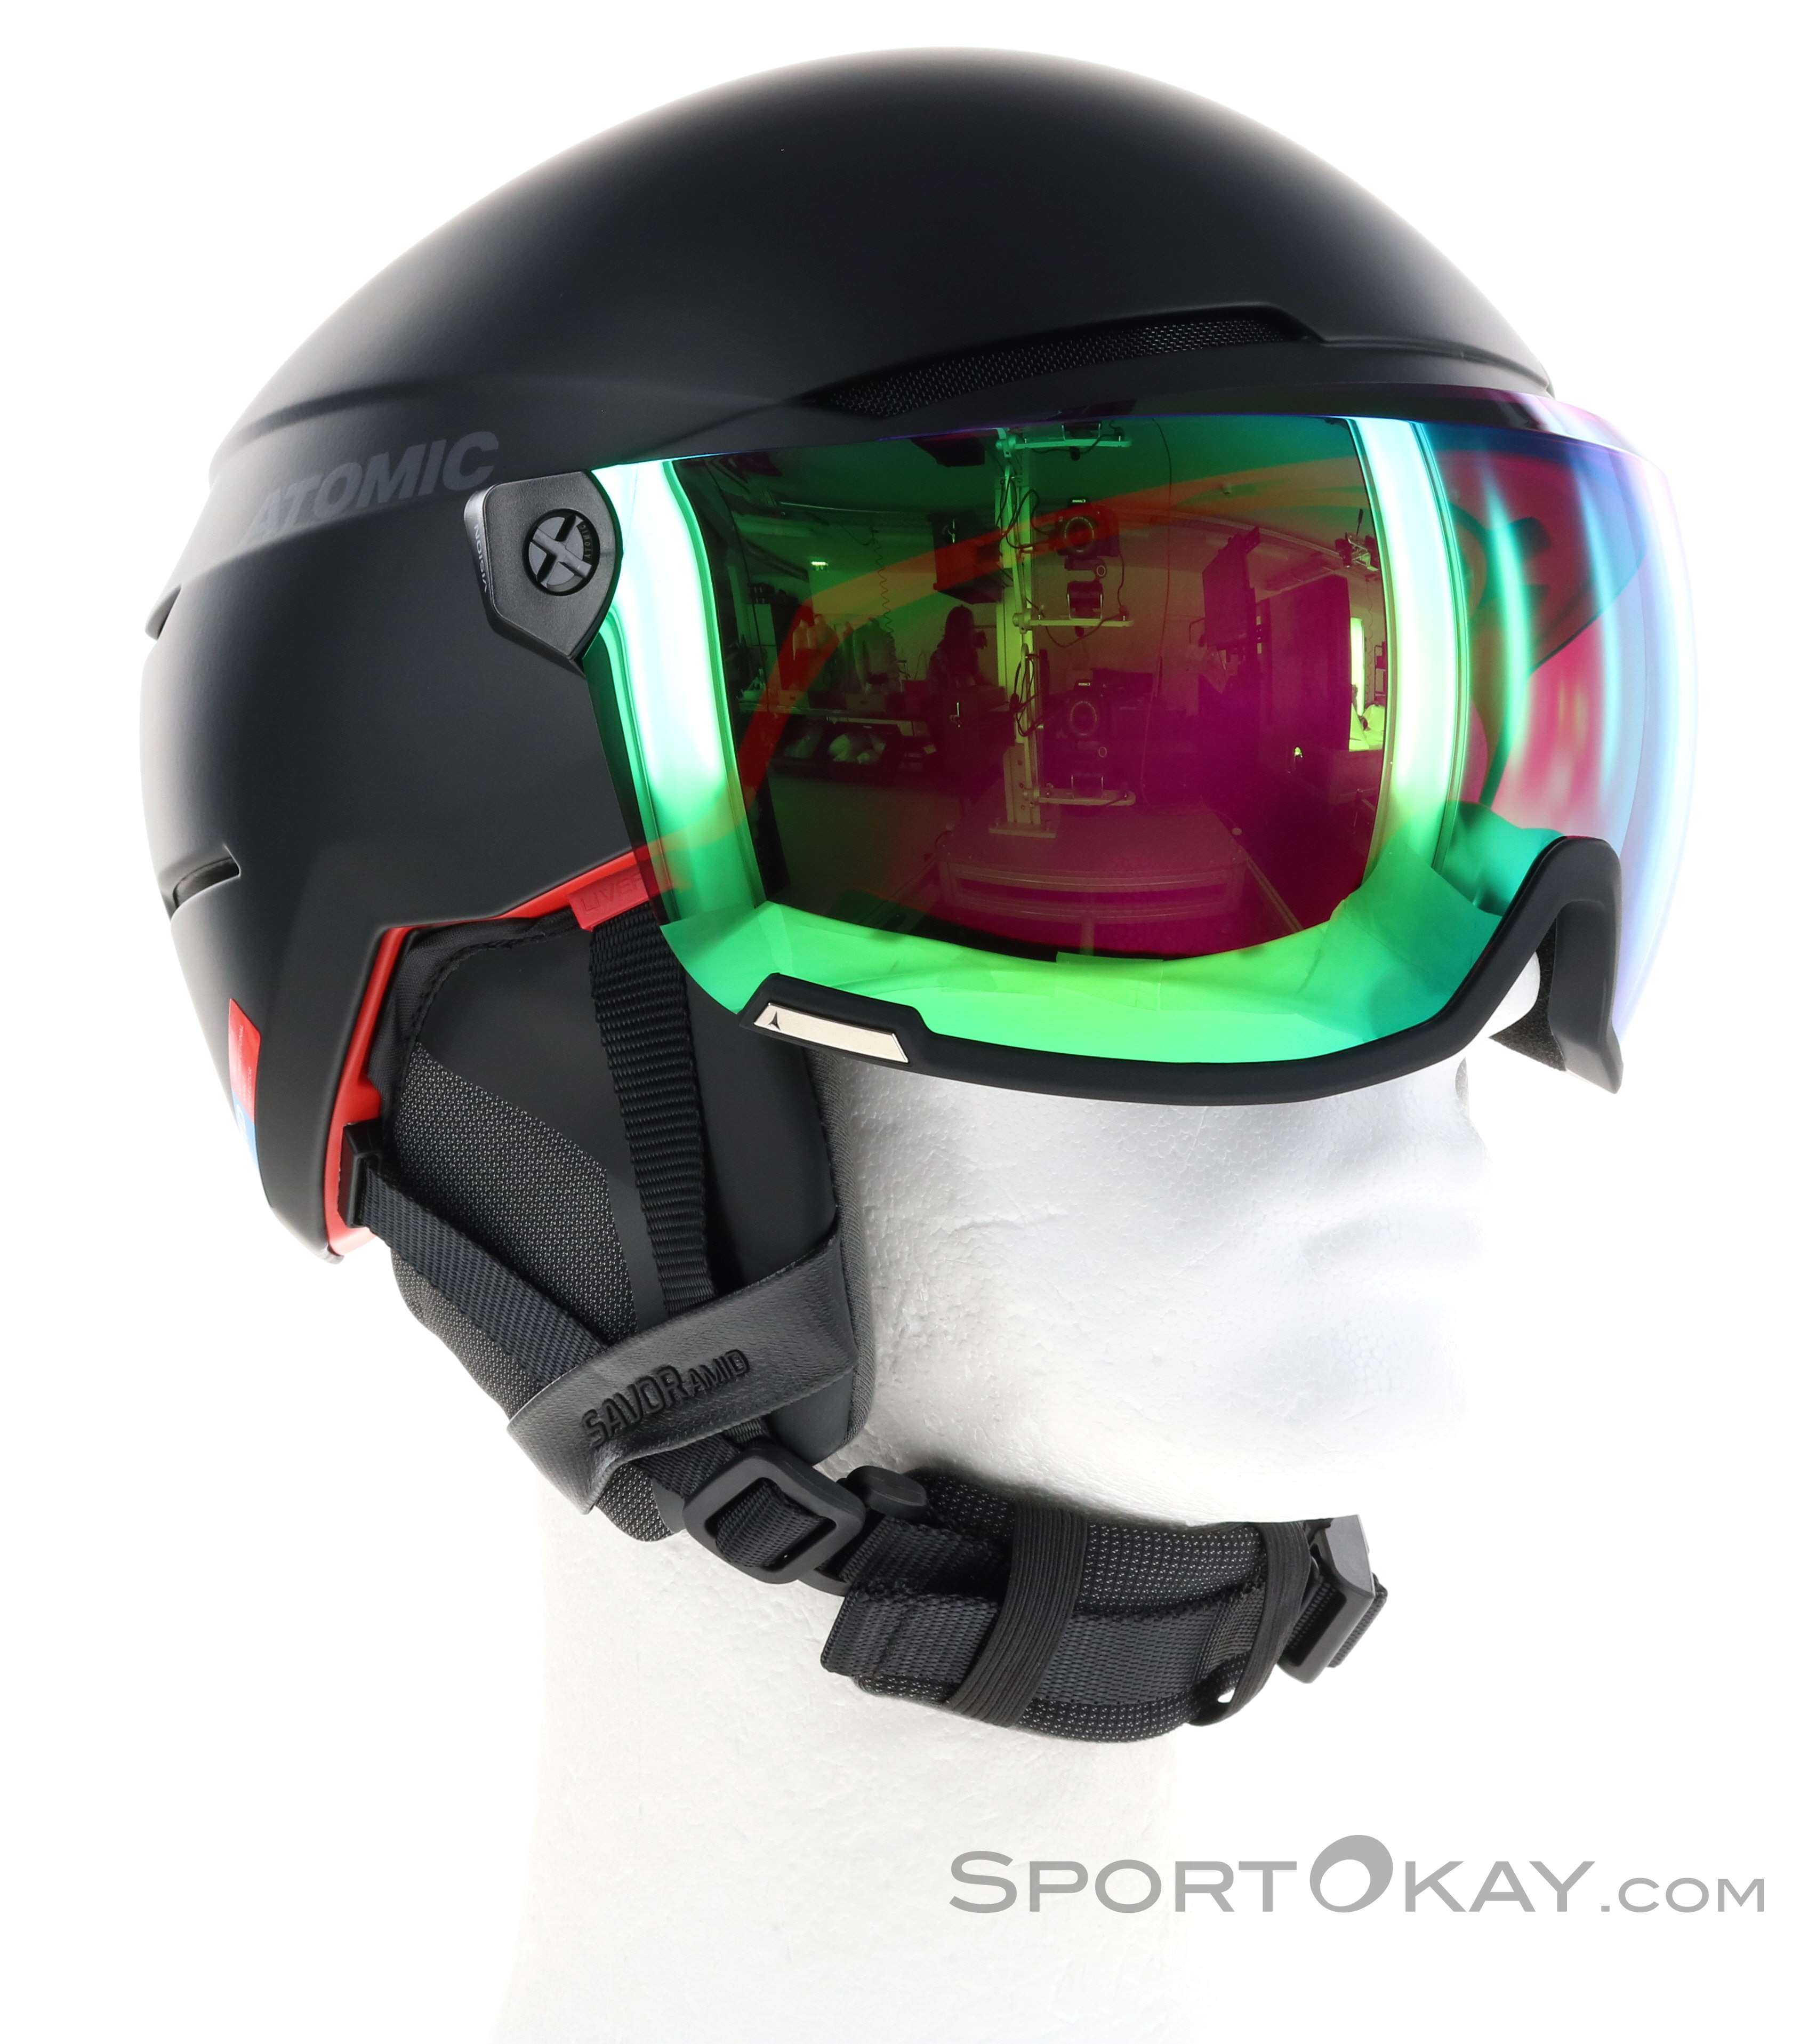 Atomic Savor- Amid Visera HD Casco de Esquí con Visera Snowboard Esquí Gris